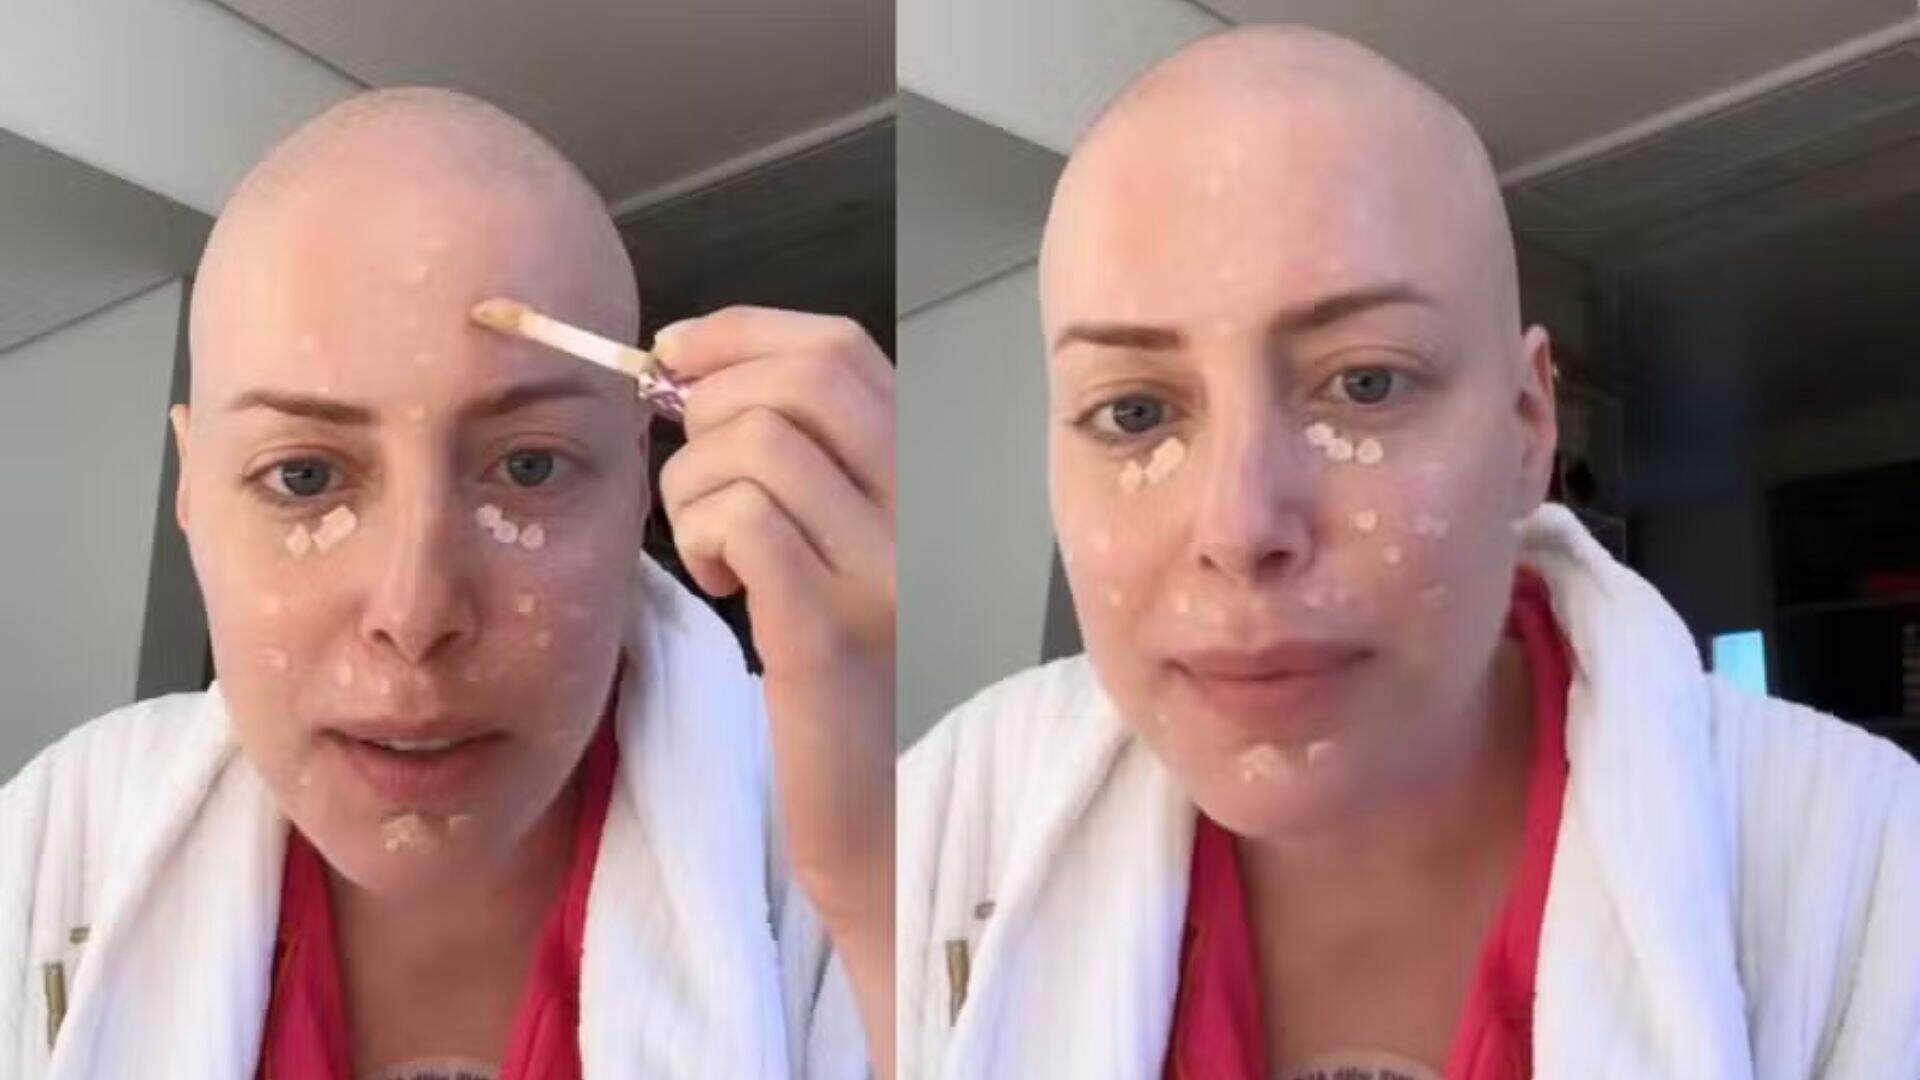 Fabiana Justus revela técnica de maquiagem após perder cabelo e faz desabafo: “Foi traumático” - Metropolitana FM